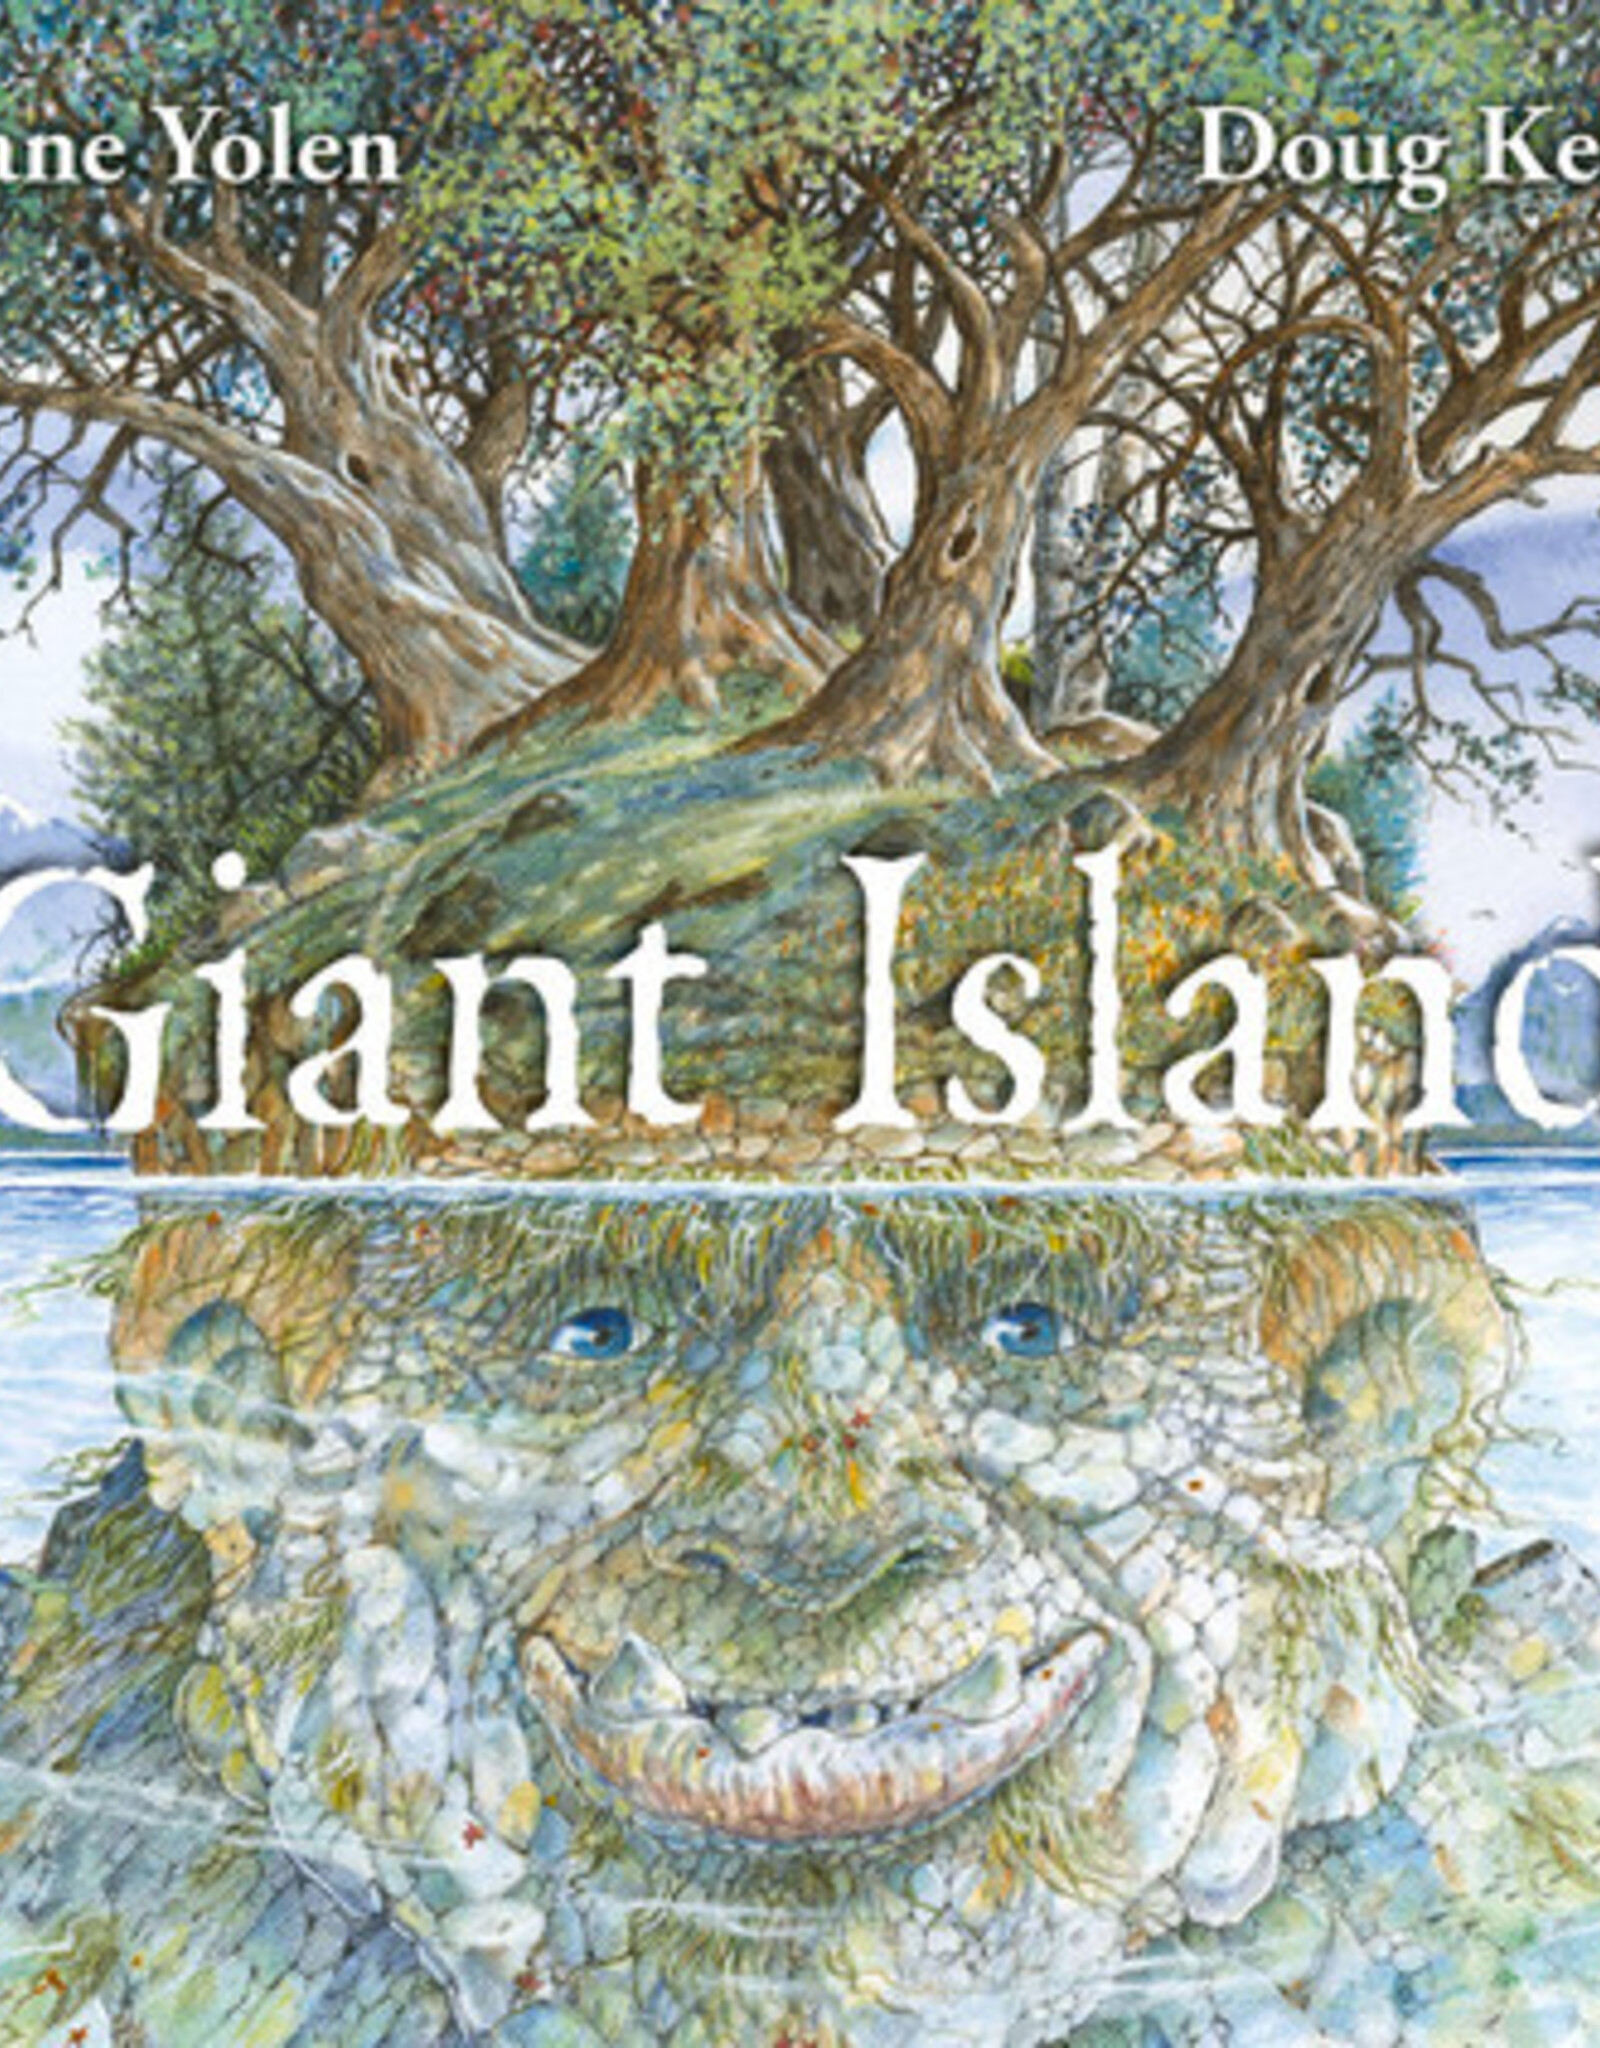 IPG Giant Island